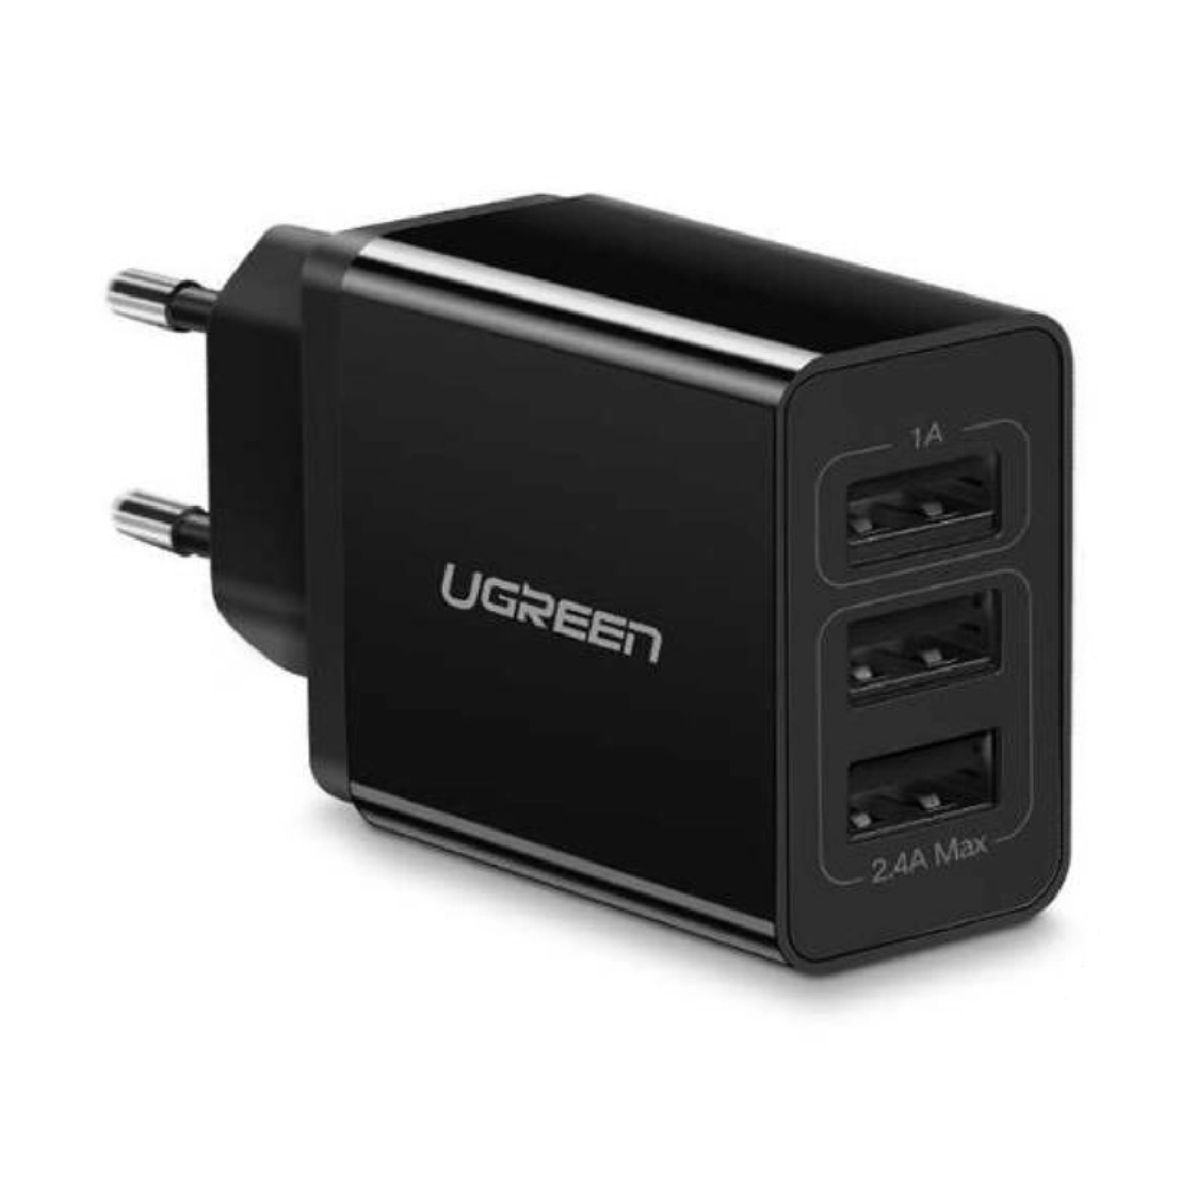 Cốc sạc USB Ugreen 50816 ED013 màu đen, 3 cổng 5V/3.1A, công suất 15.5W